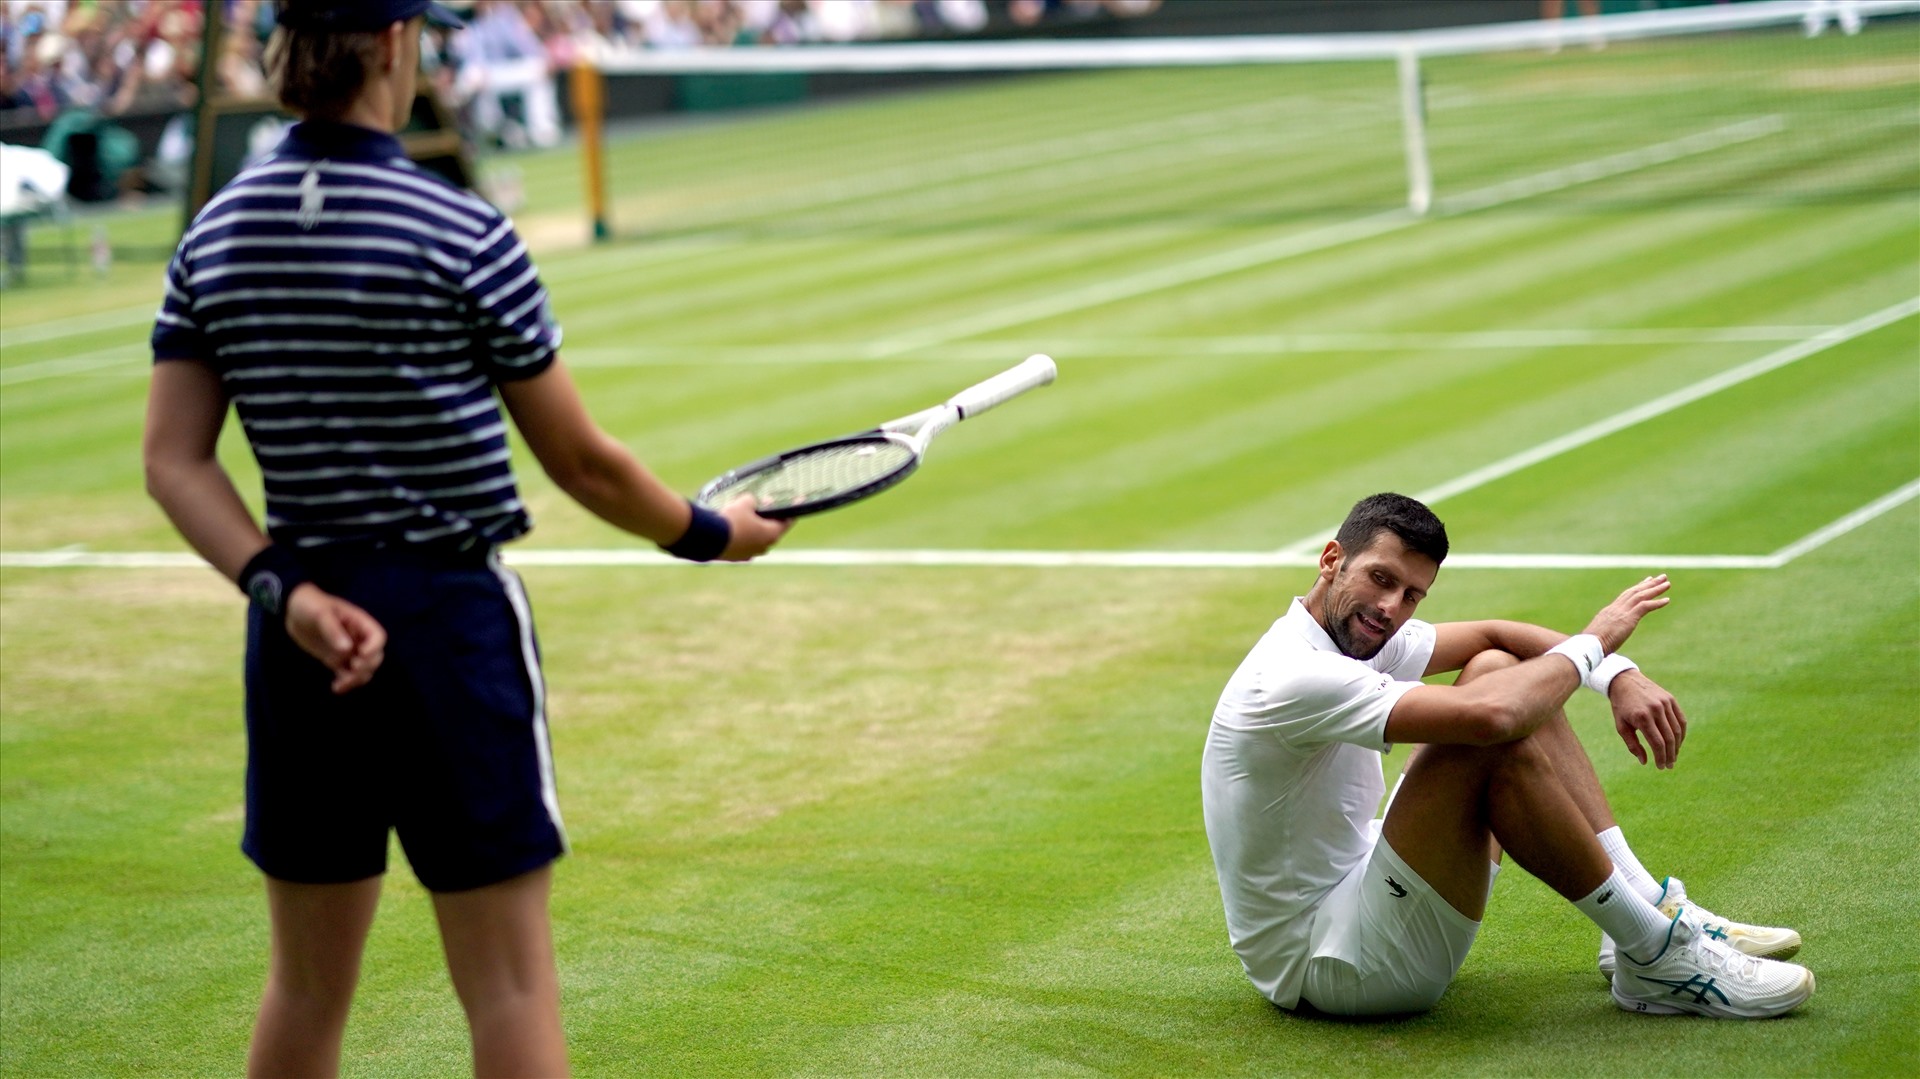 Nhiều giải đấu đang chờ Djokovic trong phần còn lại của mùa giải. Ảnh: Wimbledon